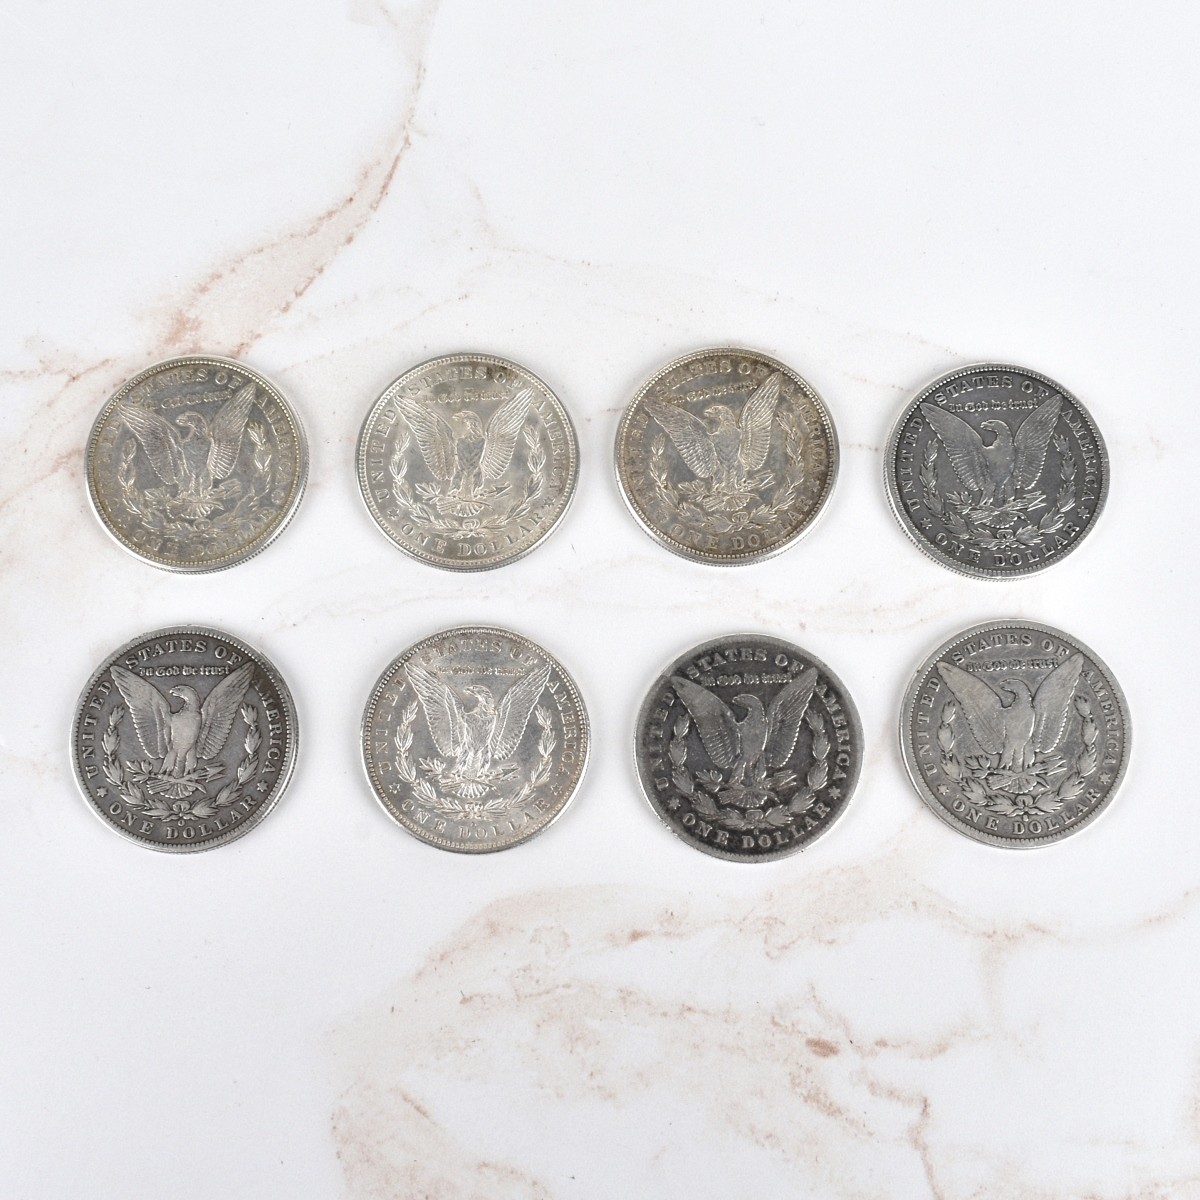 US $1 Morgan Silver Coins